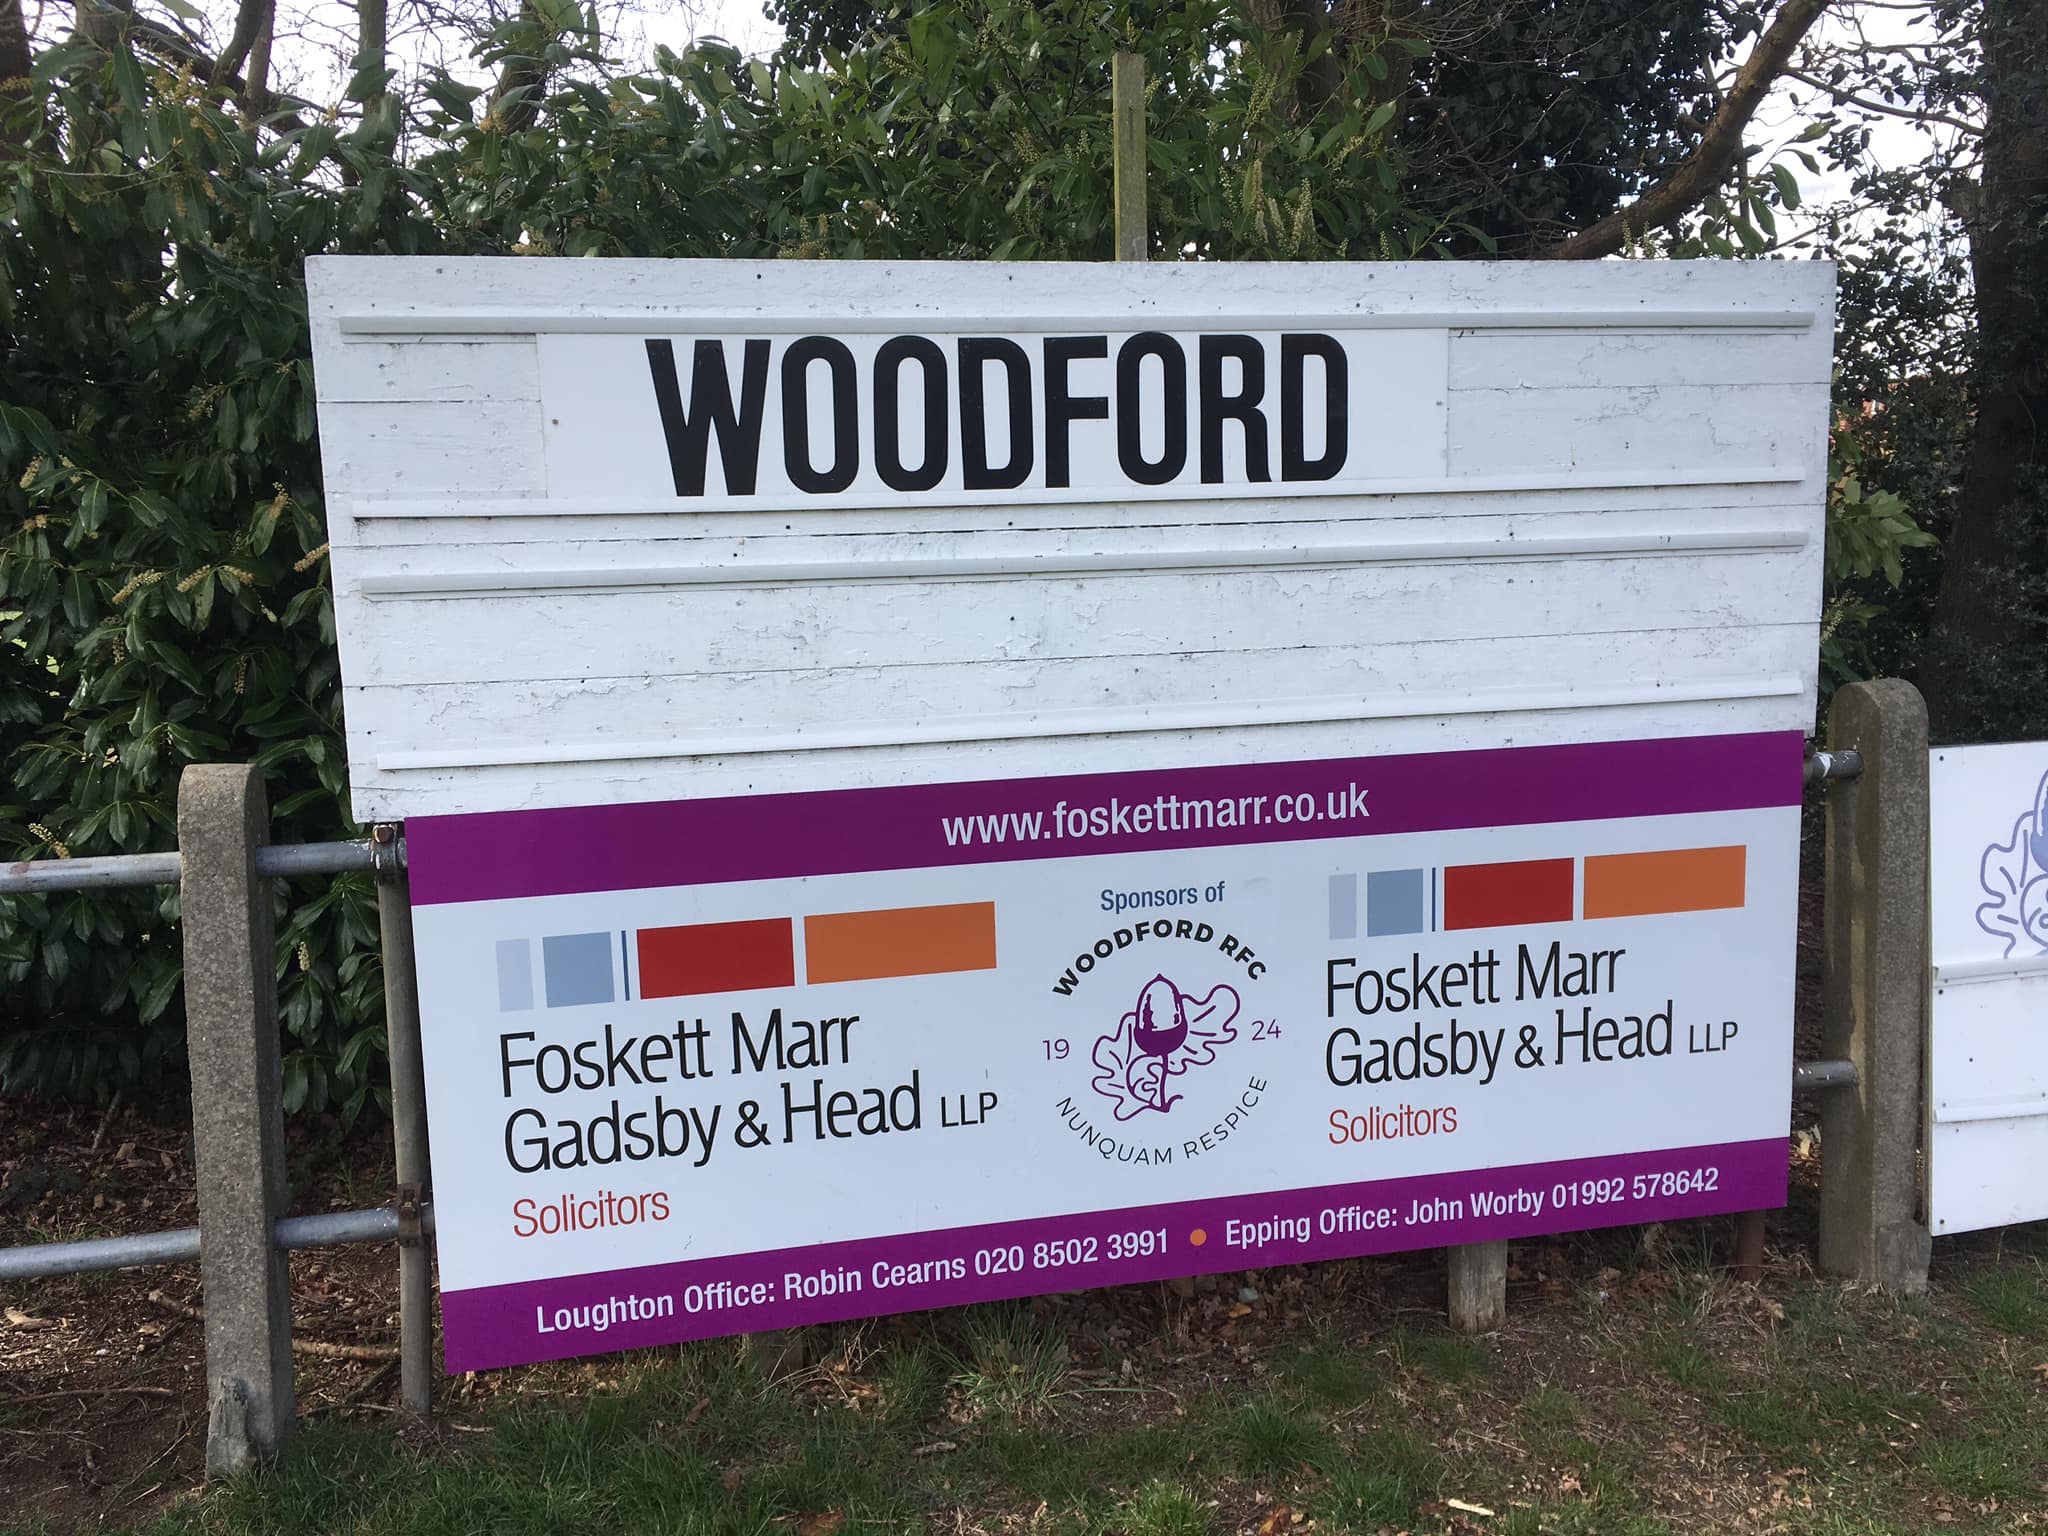 Woodford Scoreboard